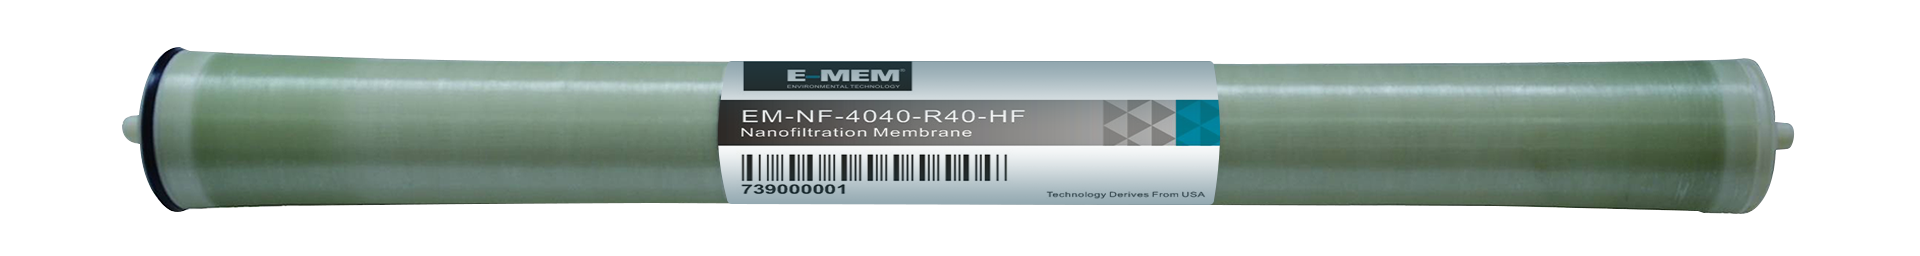 EM-NF-4040-R40-HF